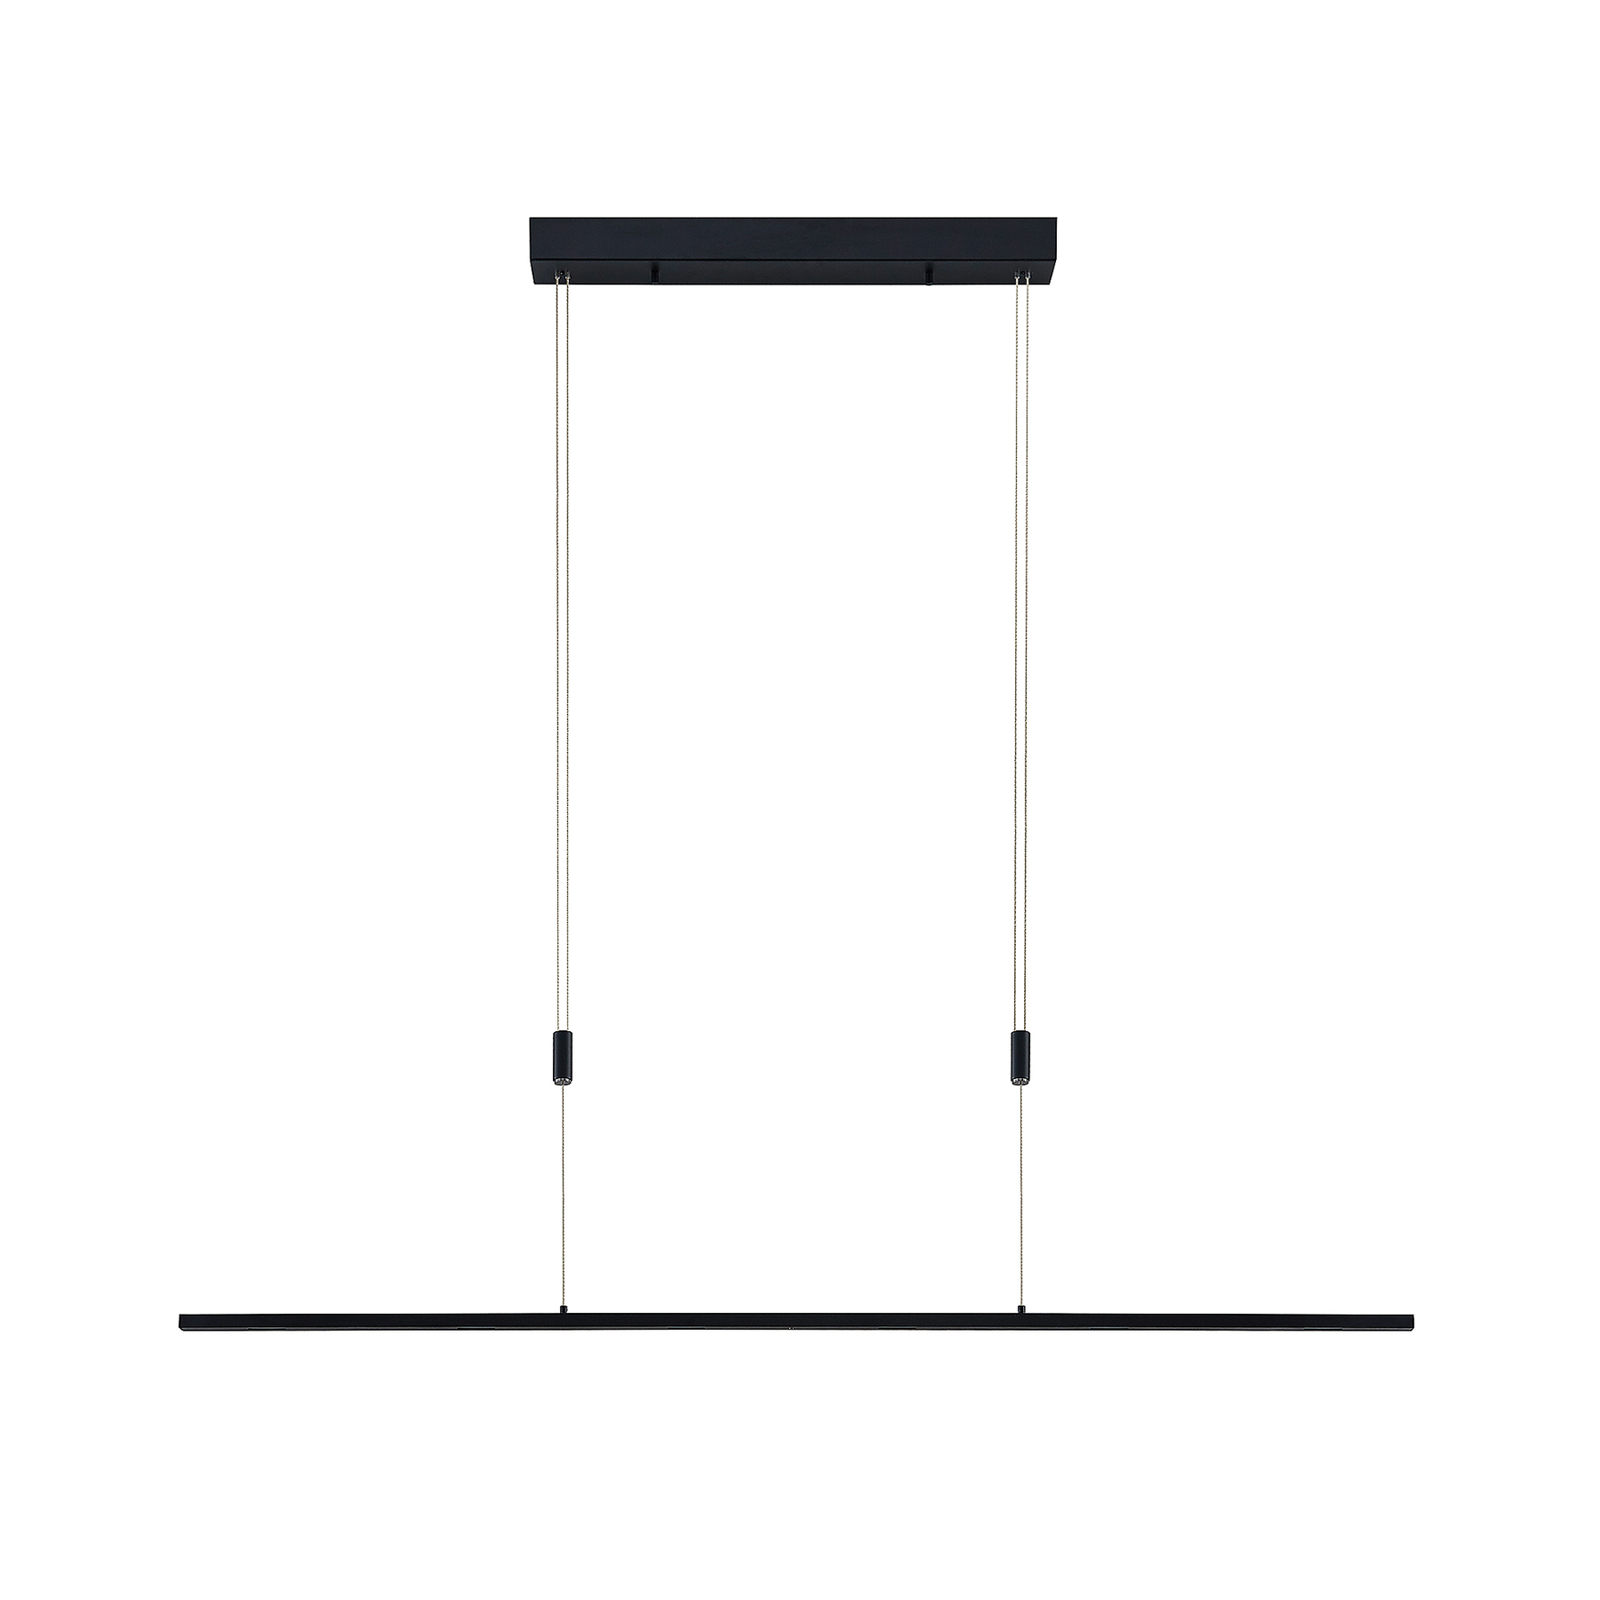 Lucande Stakato LED-Pendellampe 6fl. 140 cm lang